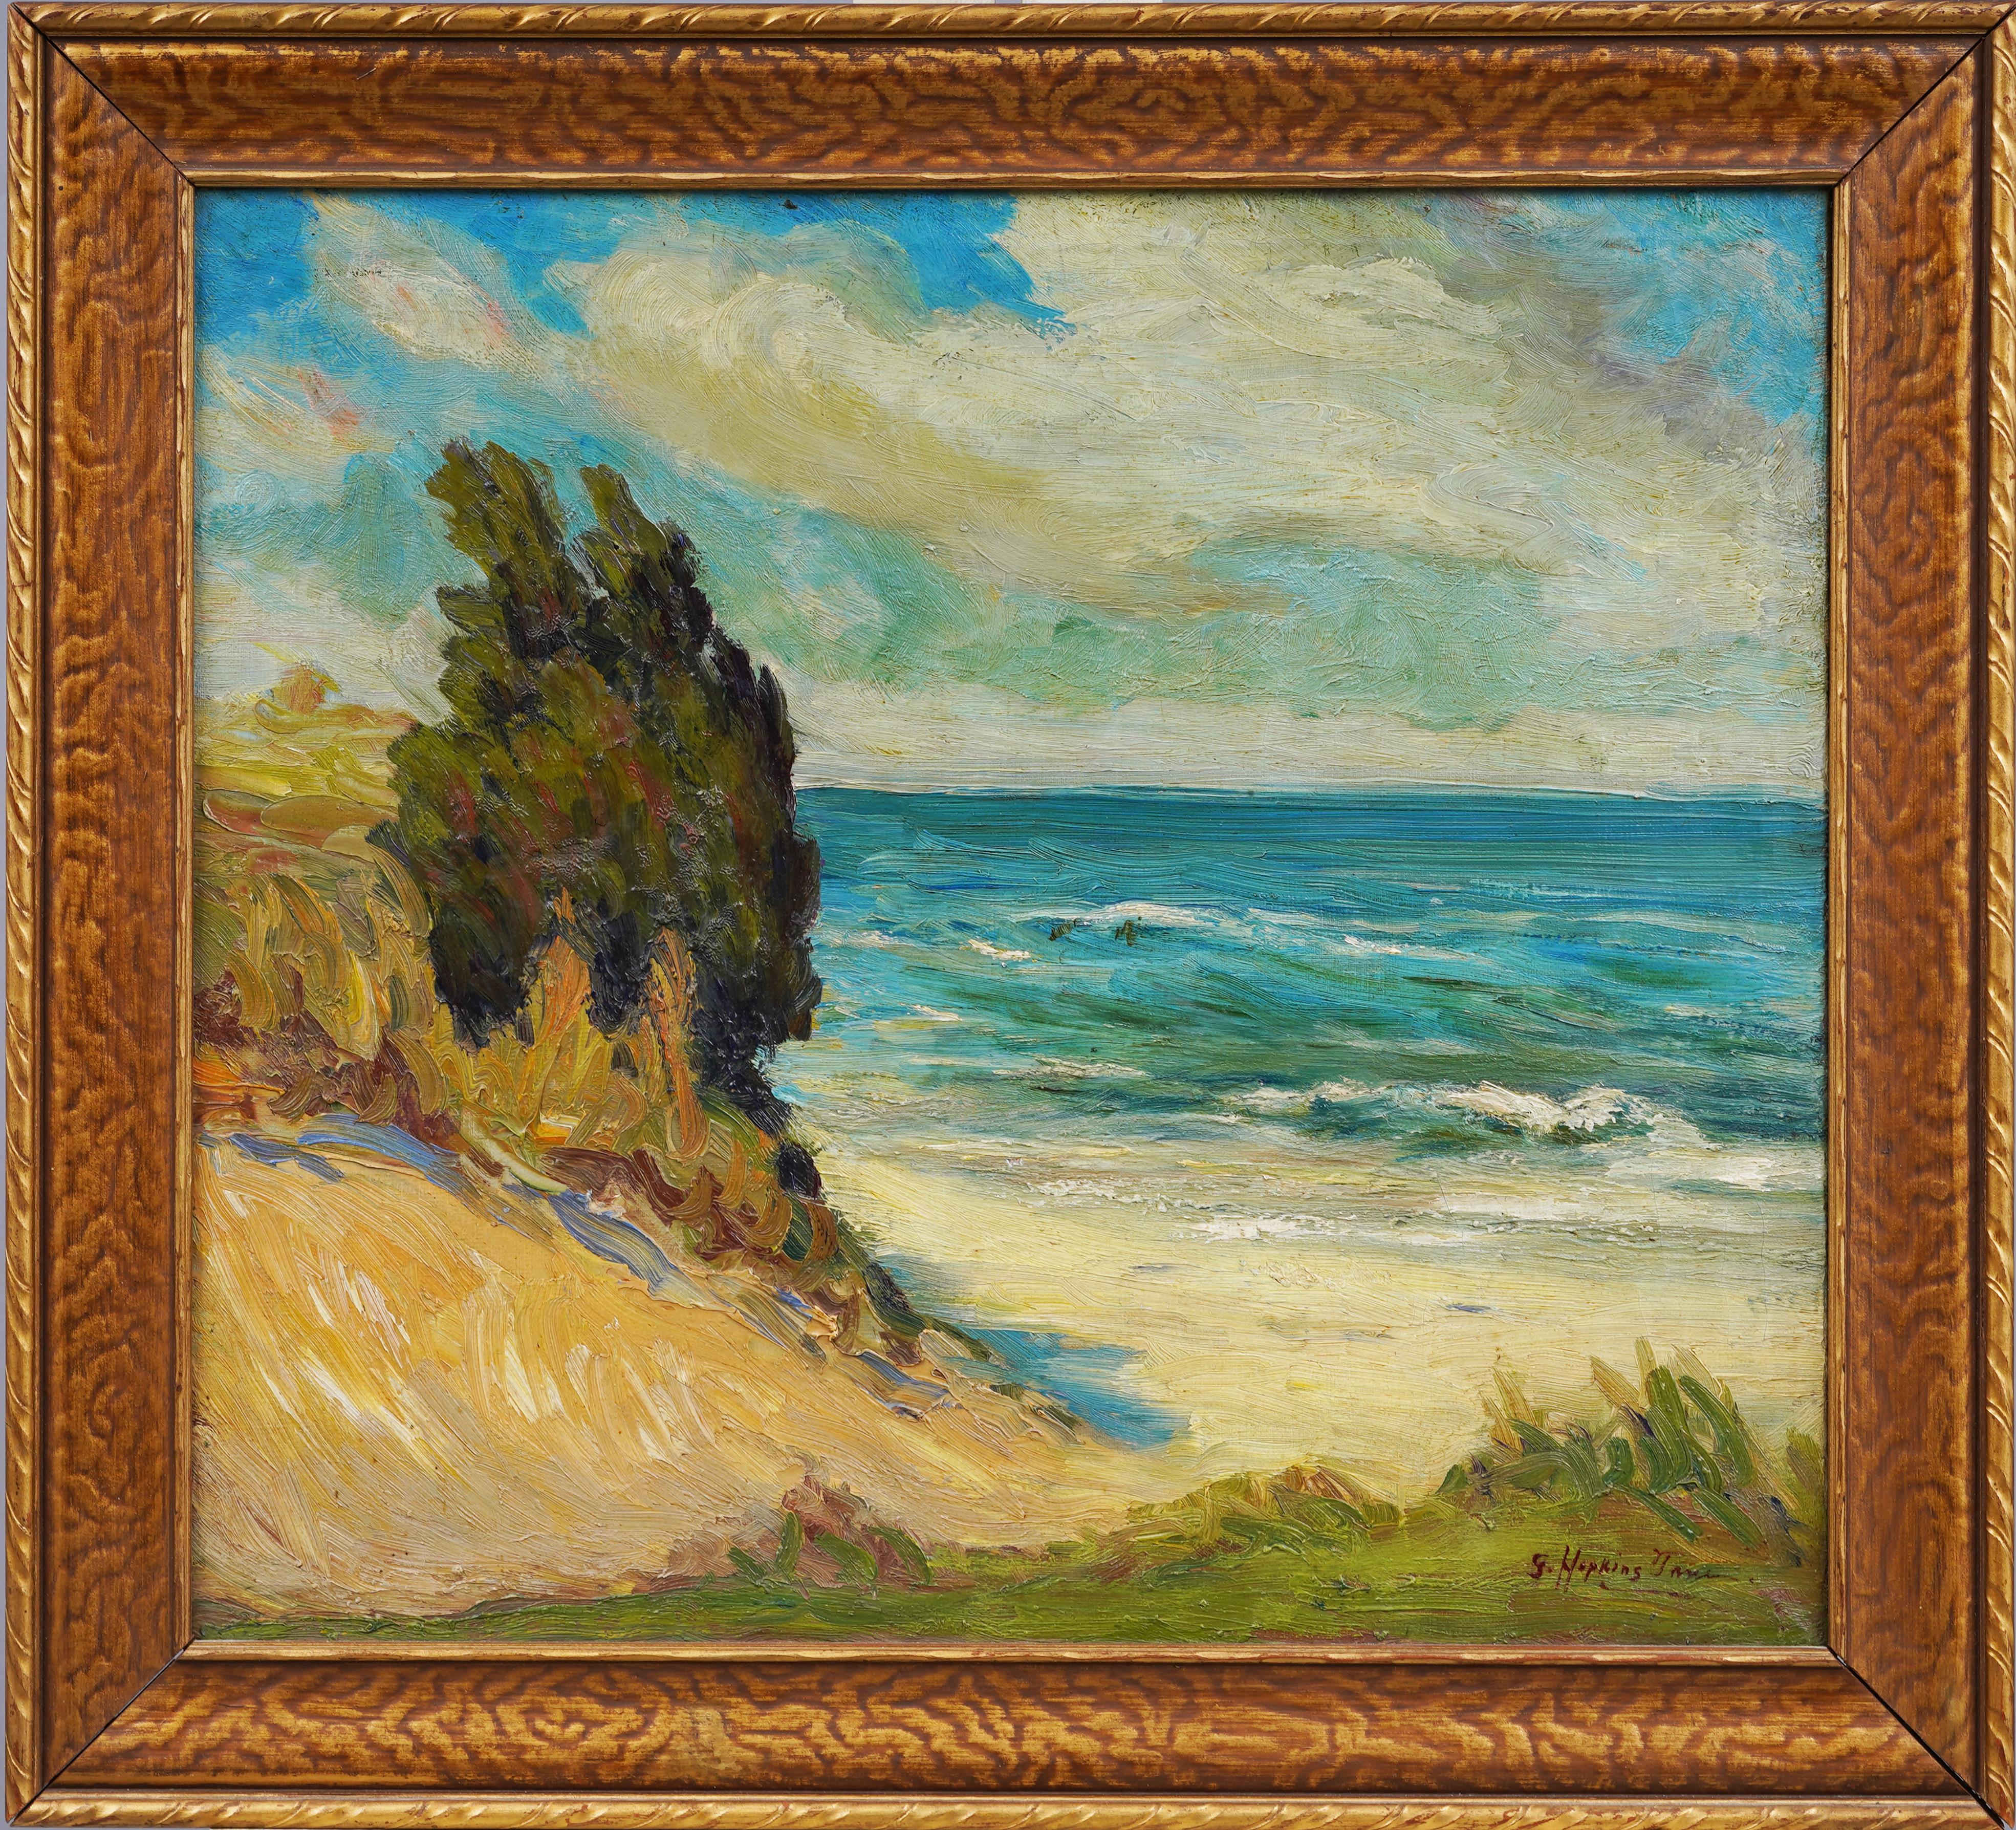 Landscape Painting Grace True - Ancienne peinture à l'huile américaine - Peinture impressionniste féminine - Peinture de plage du lac Michigan